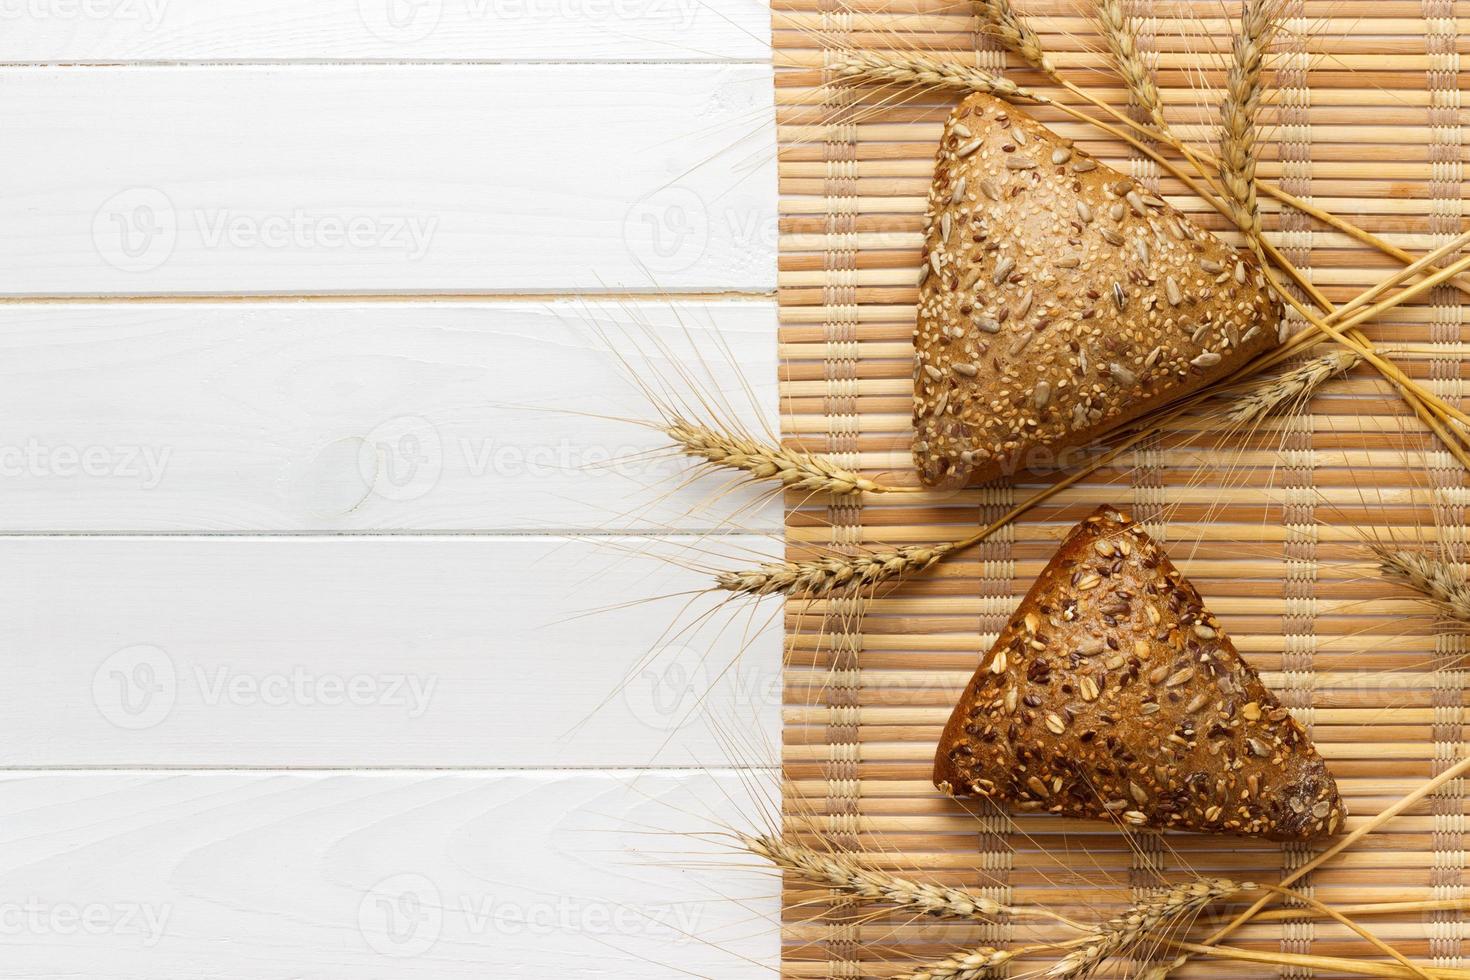 meerdere klein multi graan driehoekig vormig brood besprenkeld met geheel zonnebloem zaden, vlas en sesam zaden en tarwe en gerst stekels foto